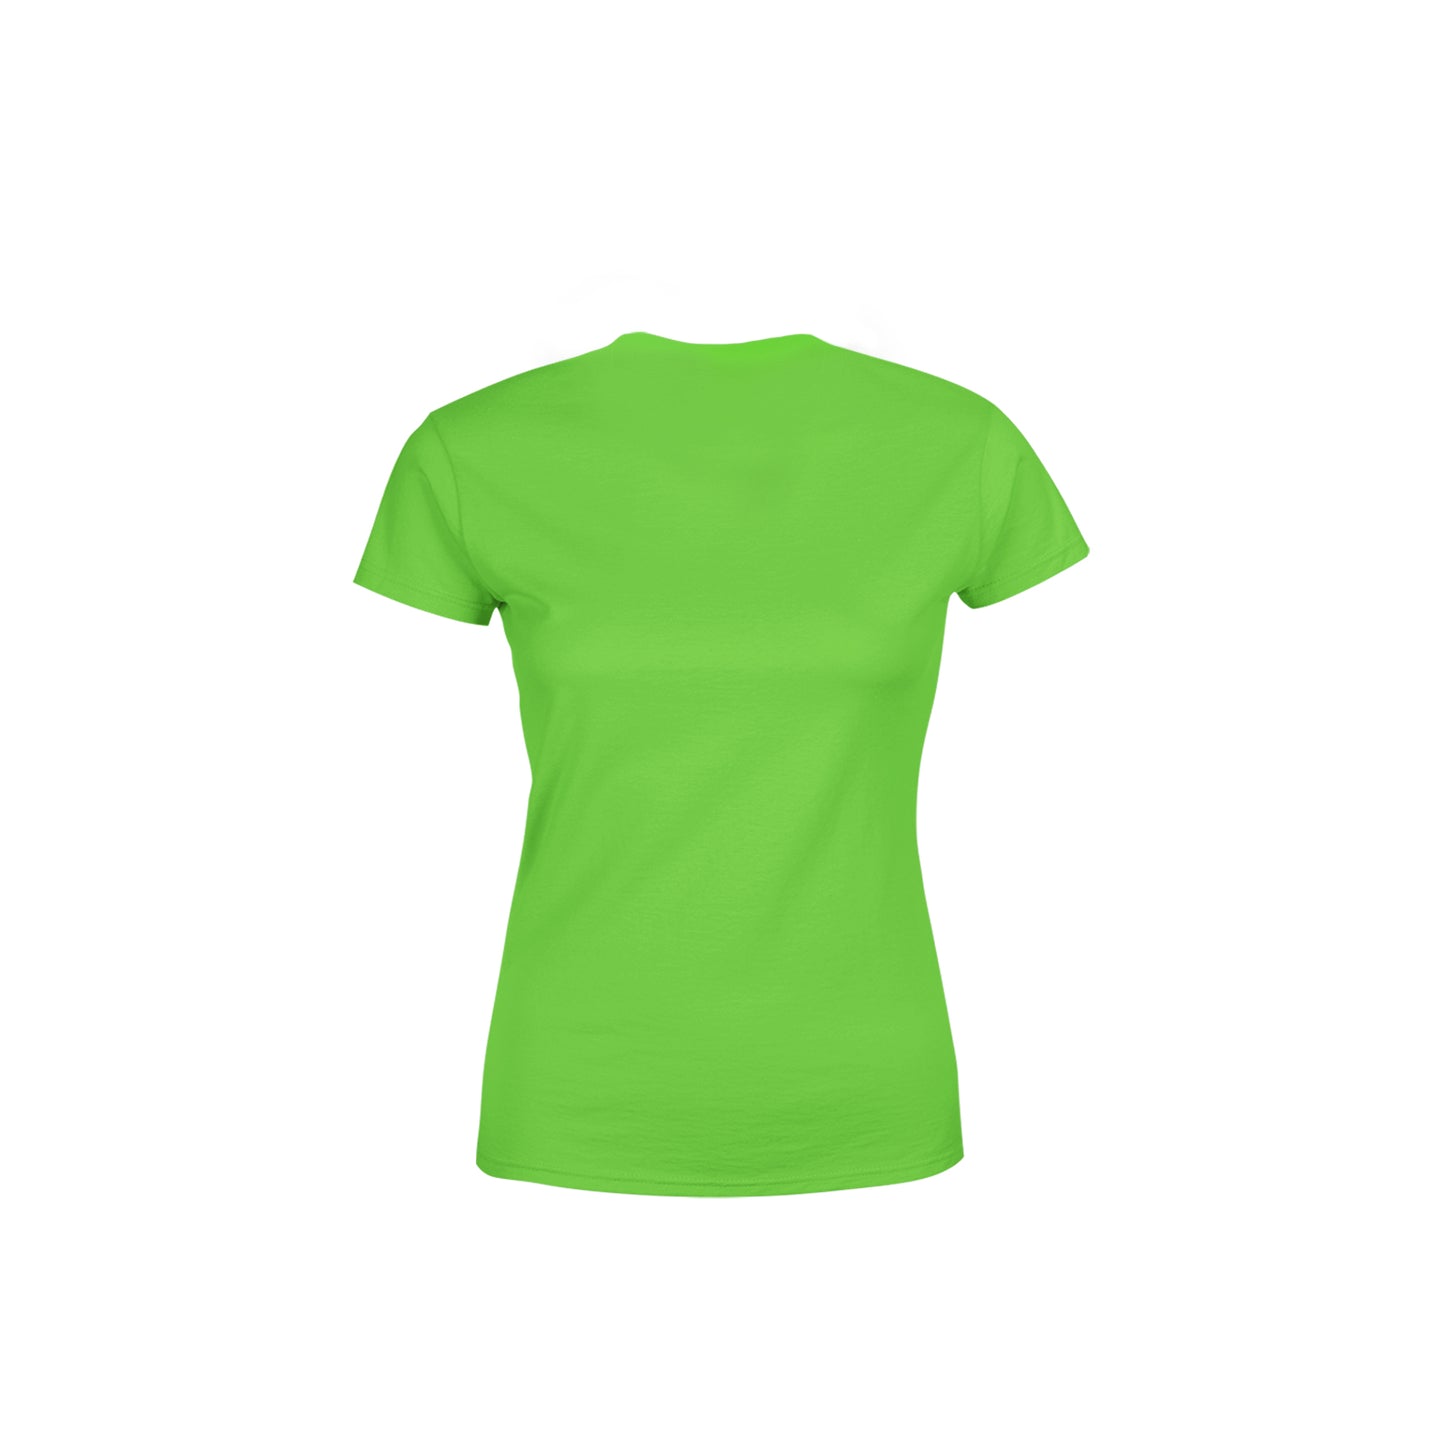 29 Number Women's T-Shirt (Liril Green)